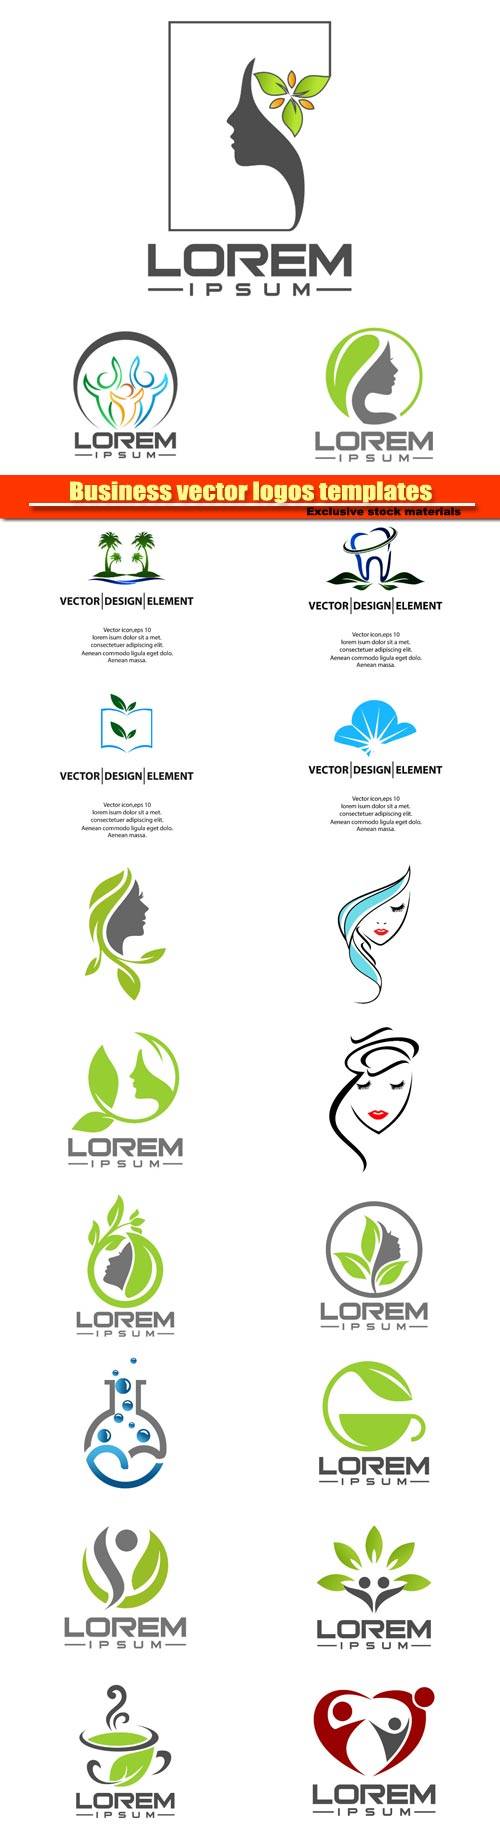 Business vector logos templates №10